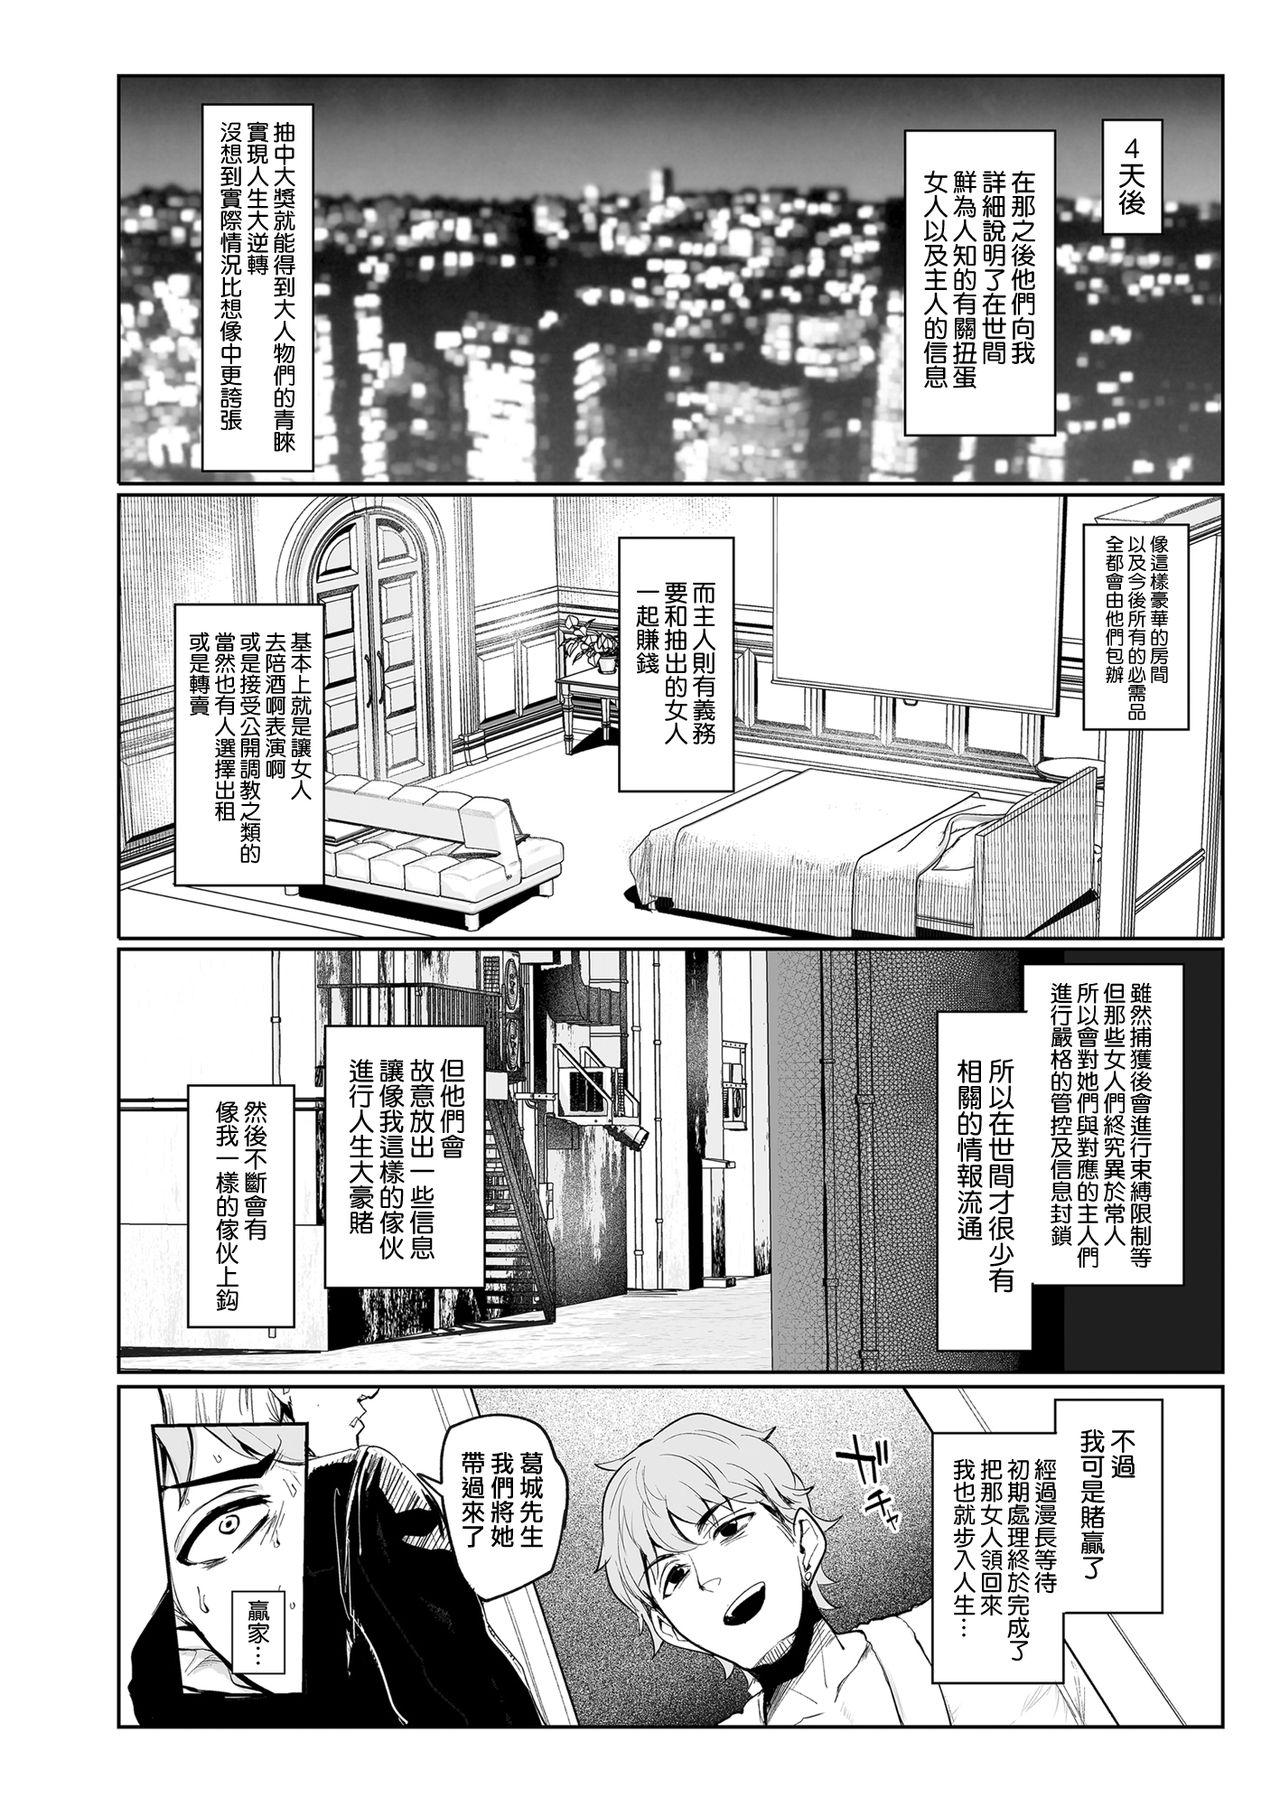 Mesu Gacha Page 22 Of 54 original hentai haven, Mesu Gacha Page 22 Of 54 or...